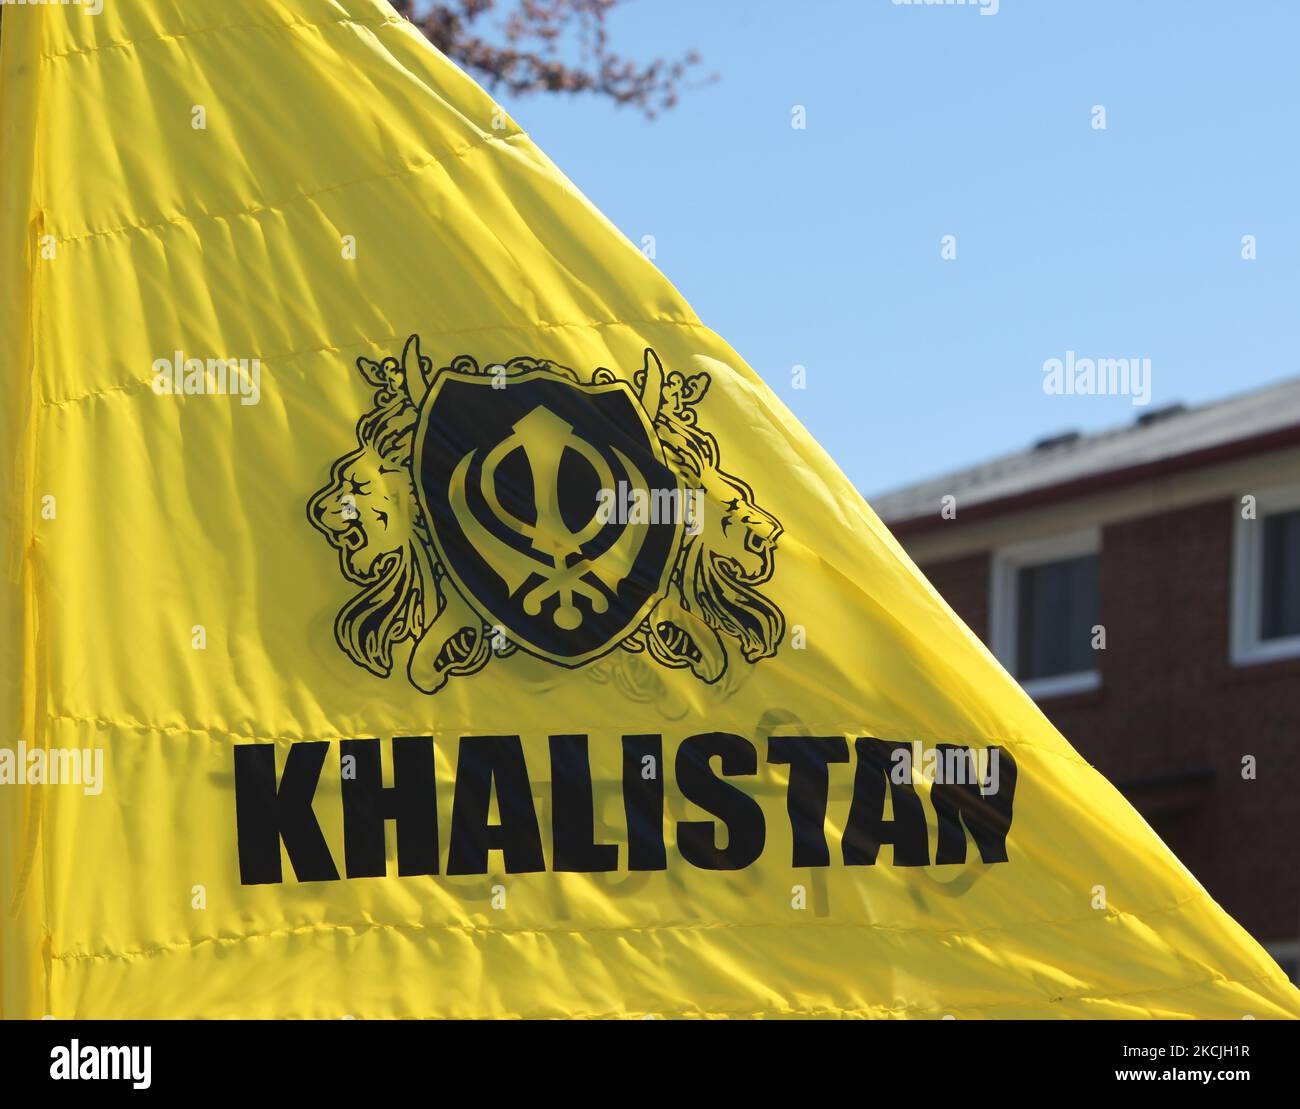 Khalistan Flagge wird als kanadischer Pro-Khalistan Sikhs Protest gegen die indische Regierung angesehen und ruft am 05. Mai 2013 zu einem separaten Sikh-Staat namens Khalistan in Malton, Ontario, Kanada, auf. Tausende von Sikhs nahmen an einem Nagar Kirtan Teil, um Vaisakhi zu feiern und ihre Unzufriedenheit mit der indischen Regierung zu zeigen. Die Khalistan-Bewegung bezieht sich auf eine Bewegung, die versucht, einen separaten Sikh-Staat zu schaffen, genannt Khalistan in der Punjab-Region Indiens. Die territoriale Definition der vorgeschlagenen Nation ist umstritten, wobei einige glauben, dass sie einfach aus dem indischen Bundesstaat Punjab, wo Sik, herausgeschnitten werden sollte Stockfoto